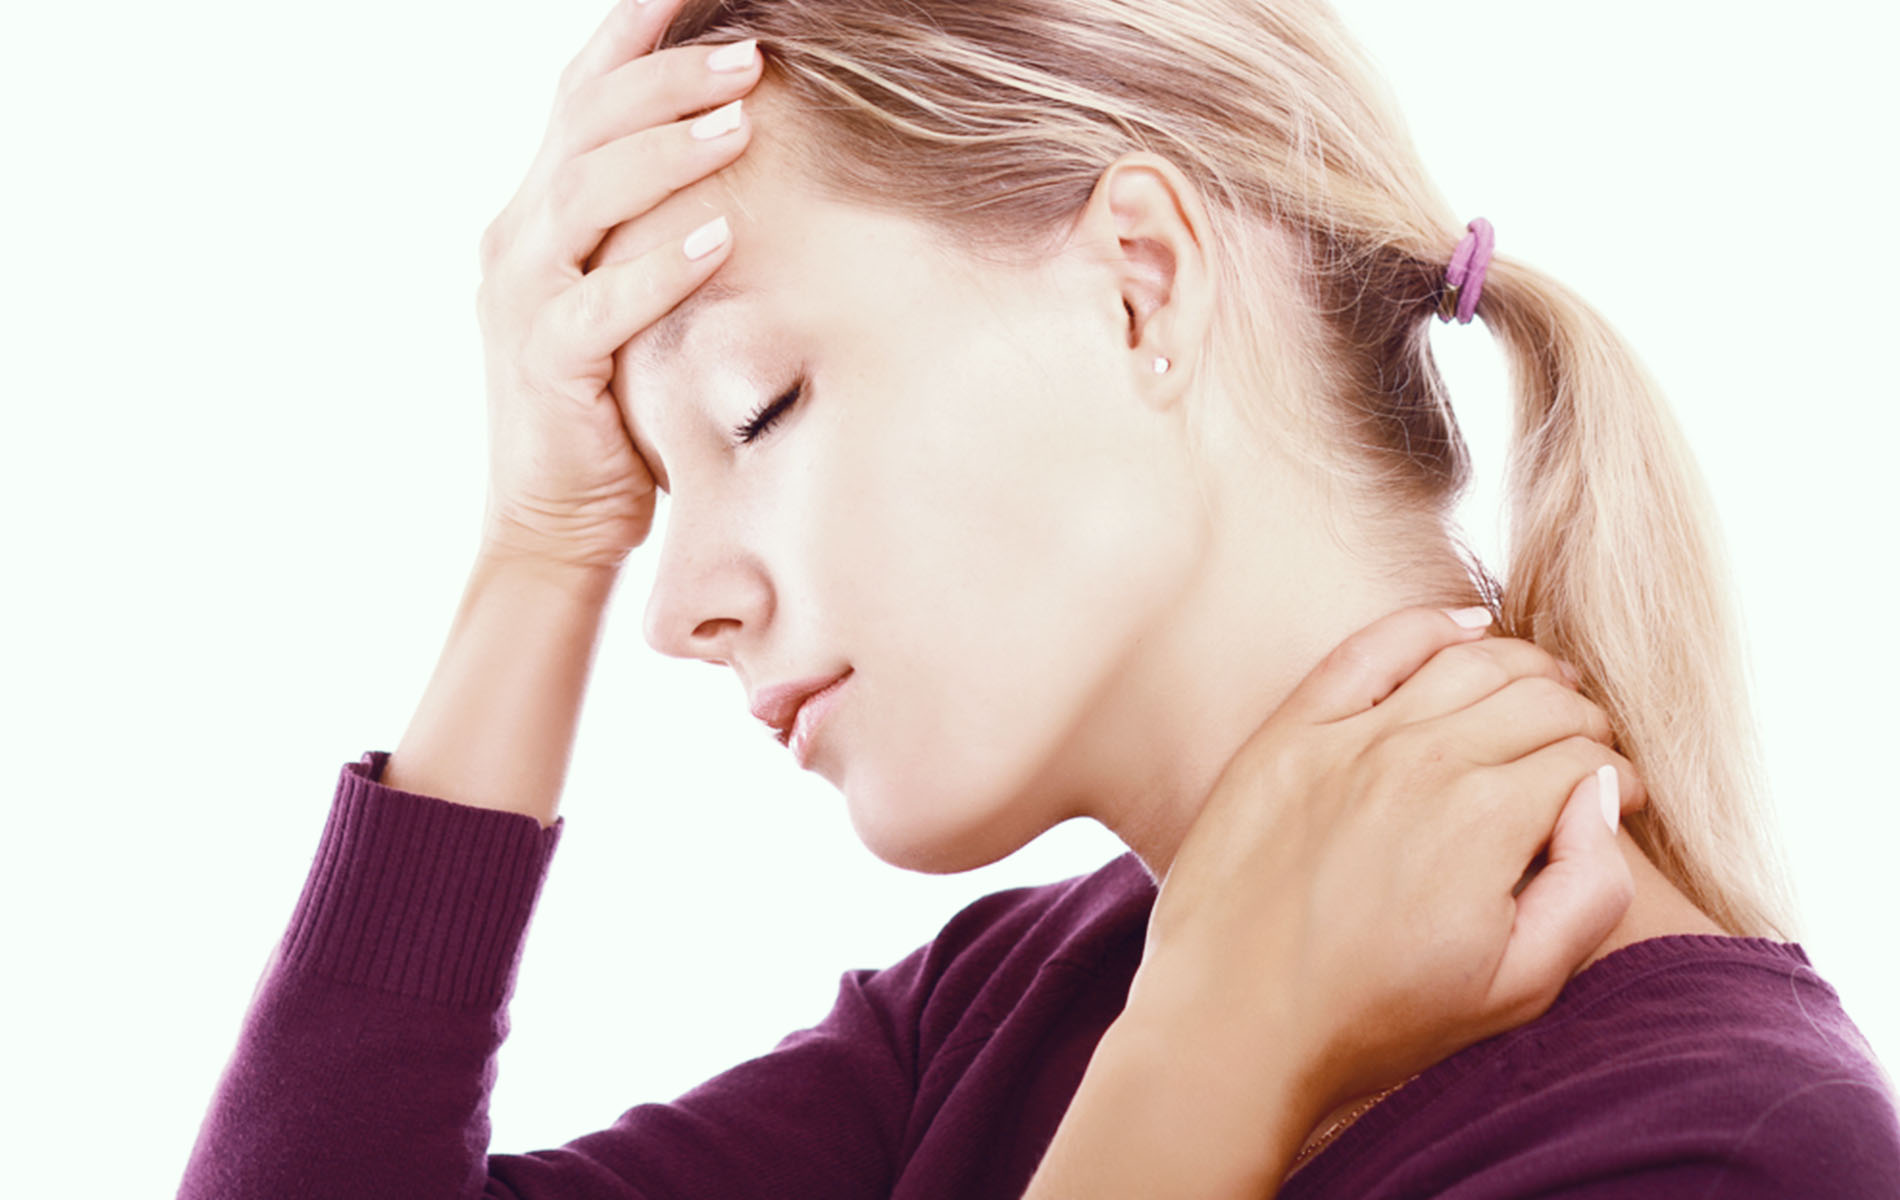 femeie care se tine de cap si de gat din cauza migrenei